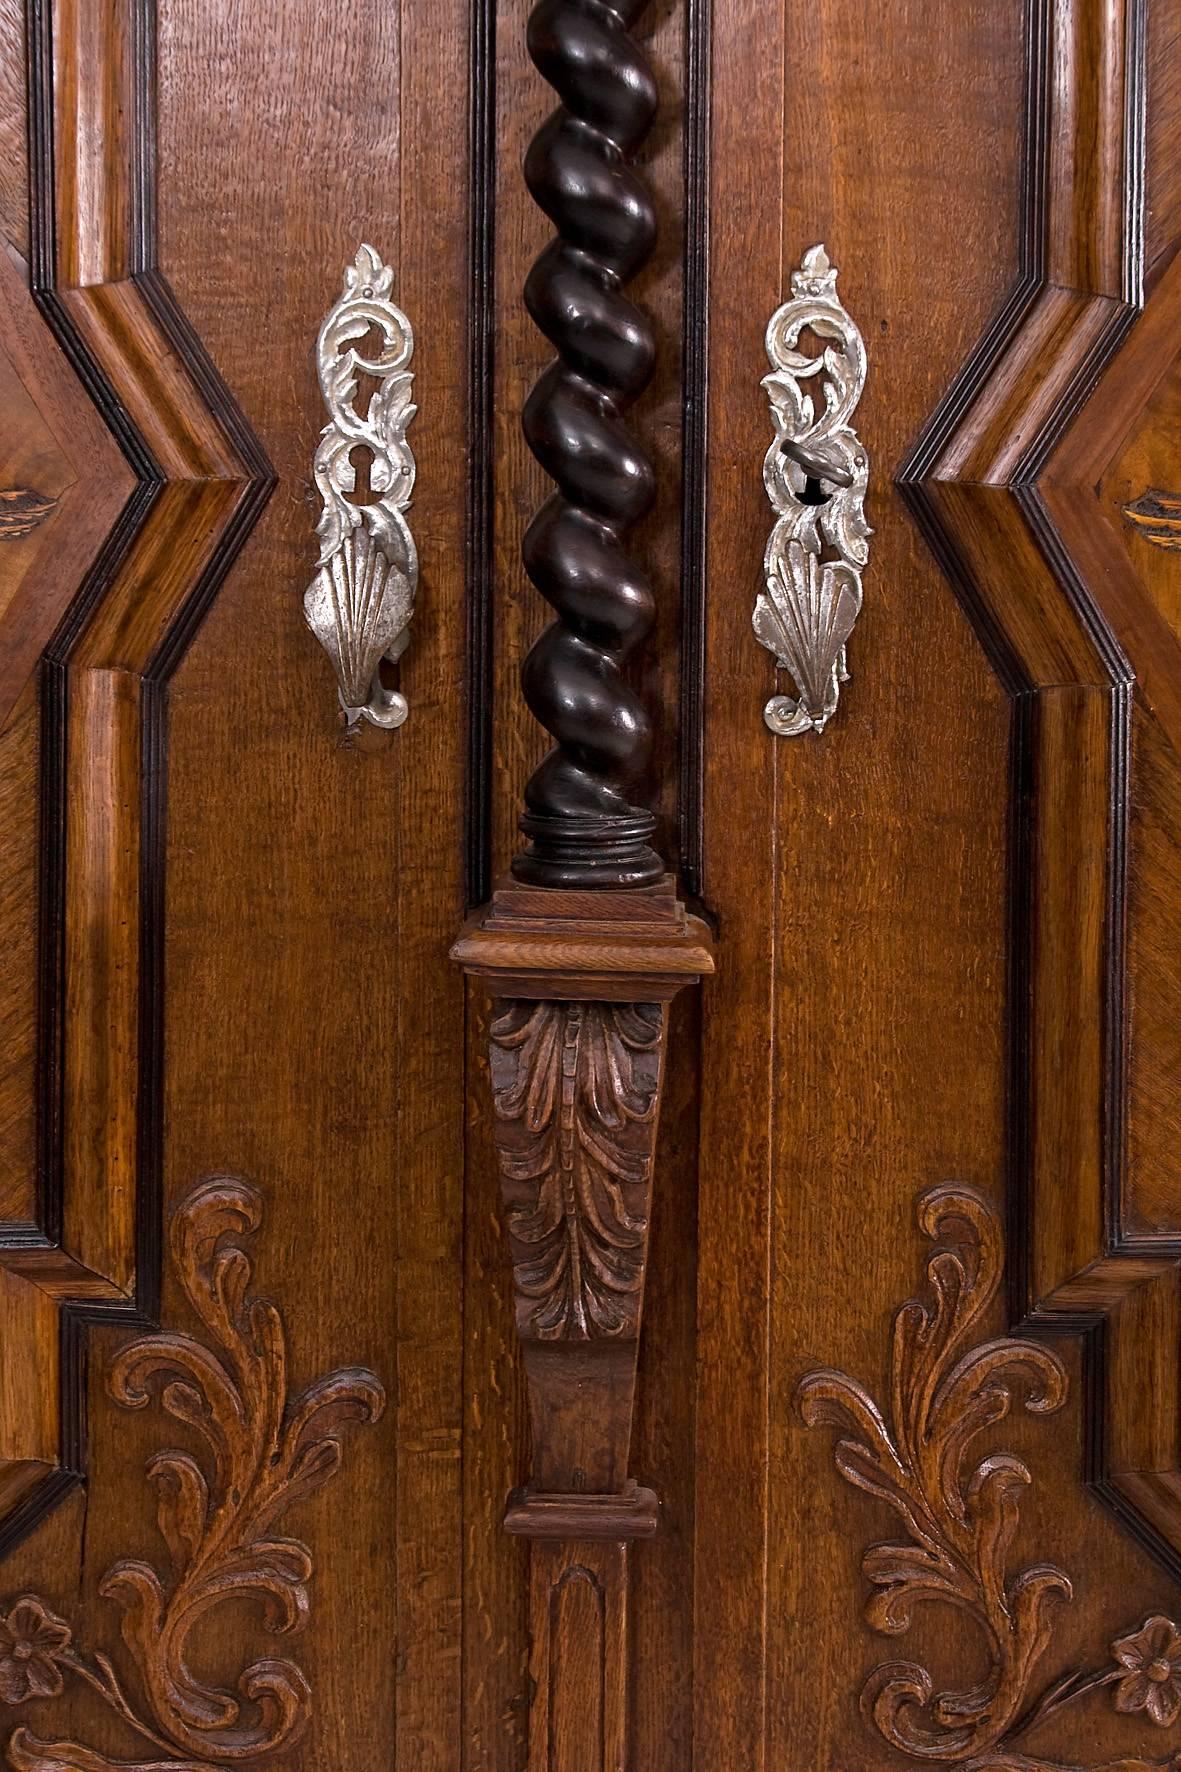 Swabian Baroque Facade Cabinet from 1700 (Furnier)